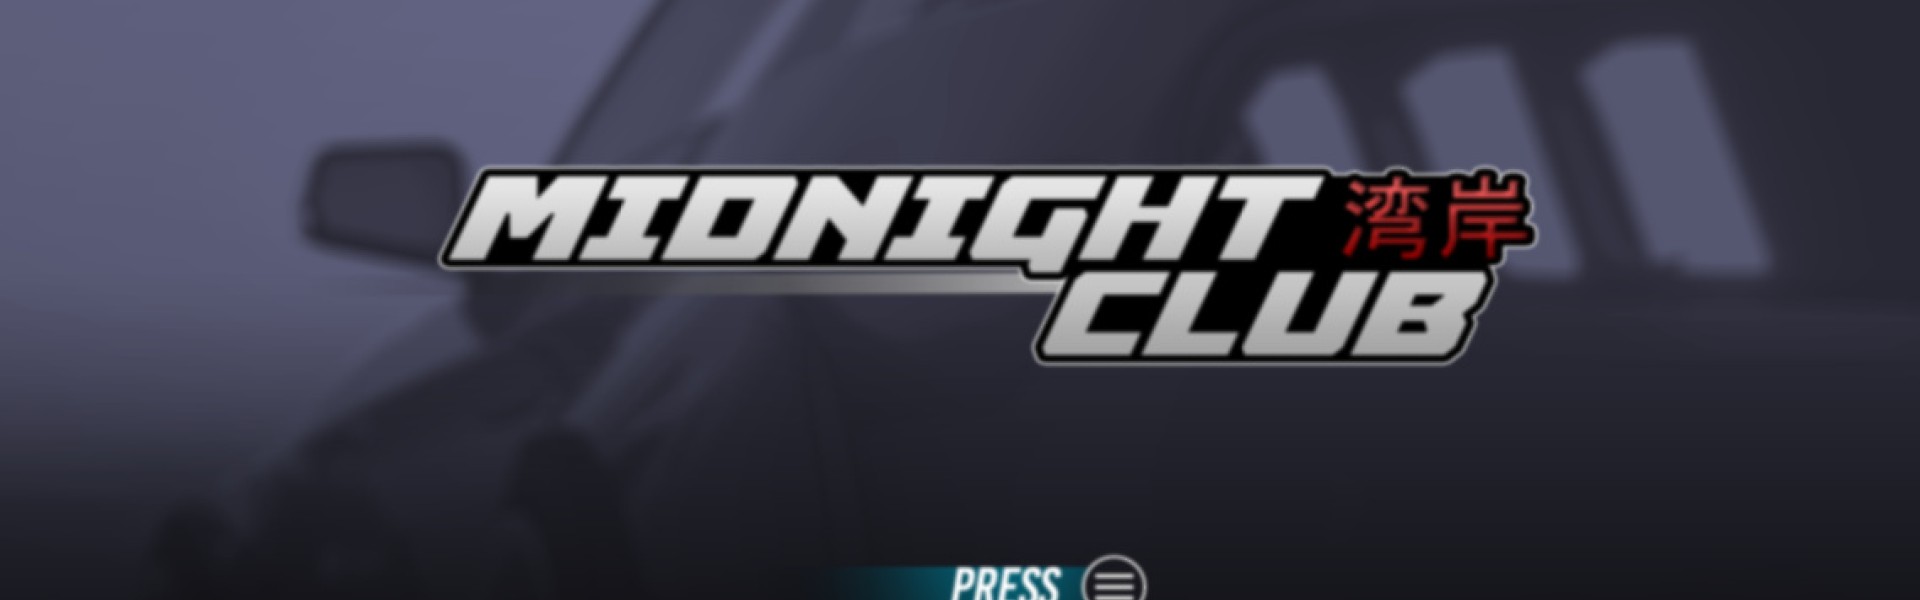 Midnight Club Reboot